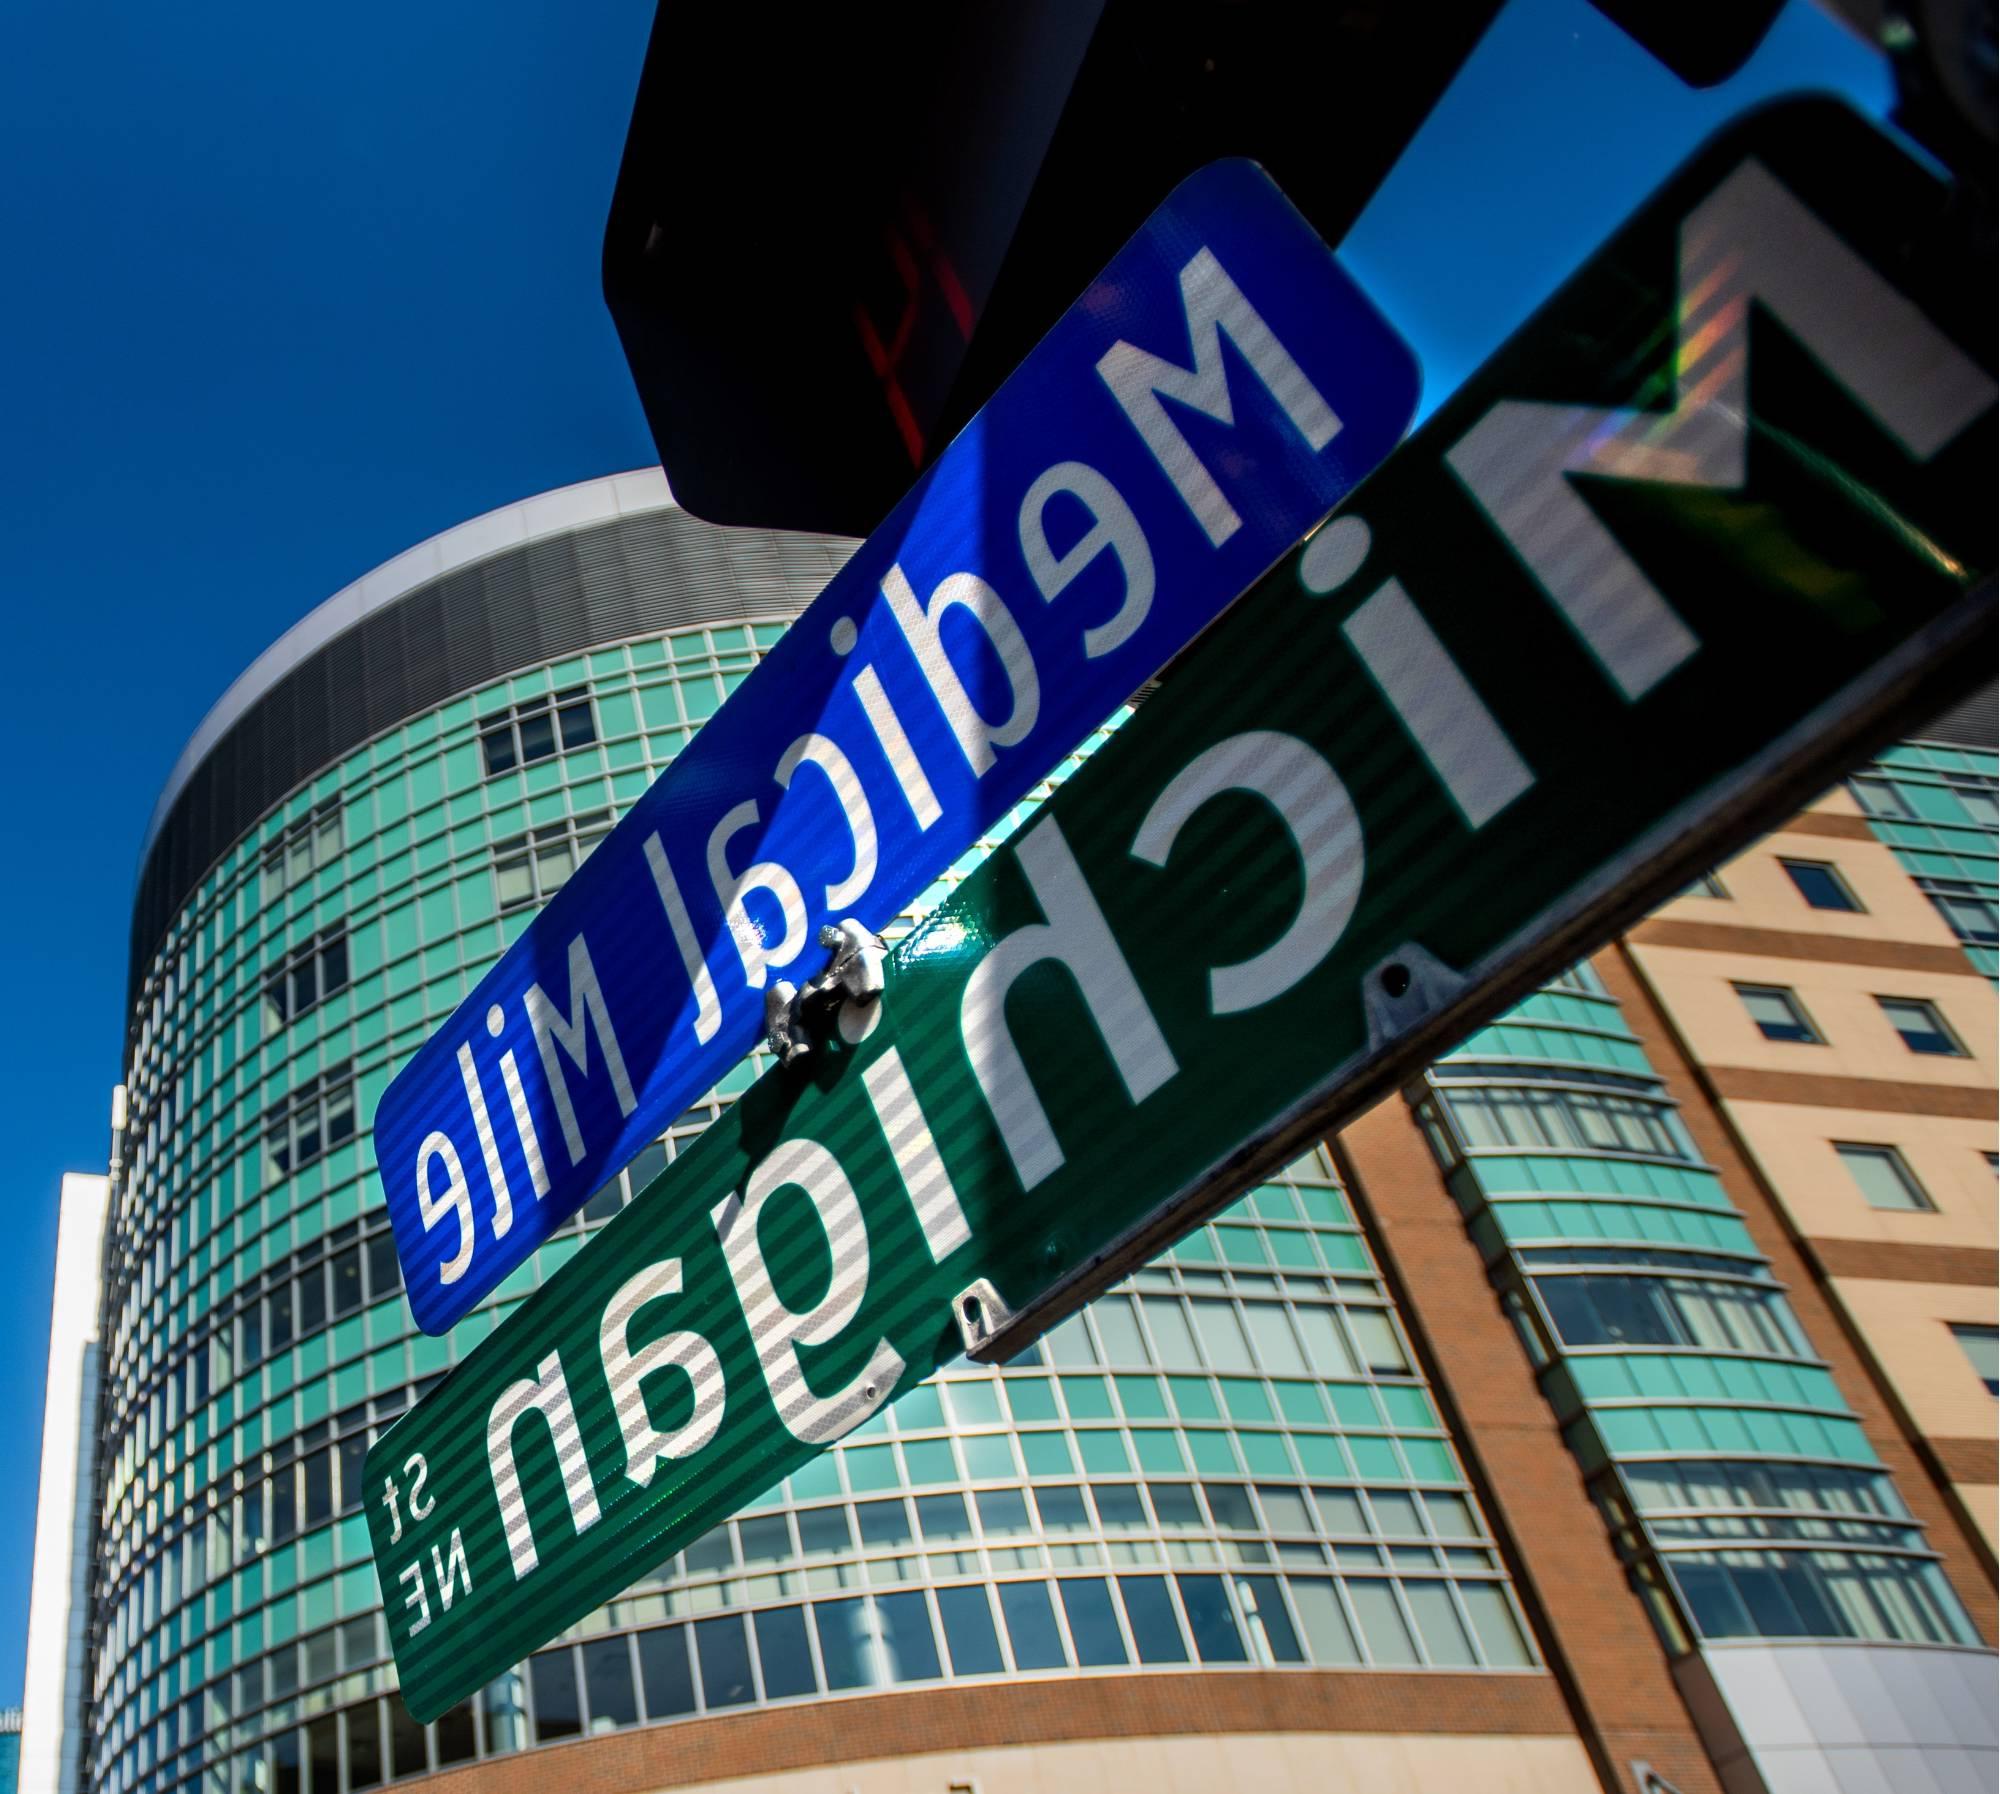 特写照片街道标志列出“密歇根街东北”和“医疗英里”, 远处有一座医疗大楼.